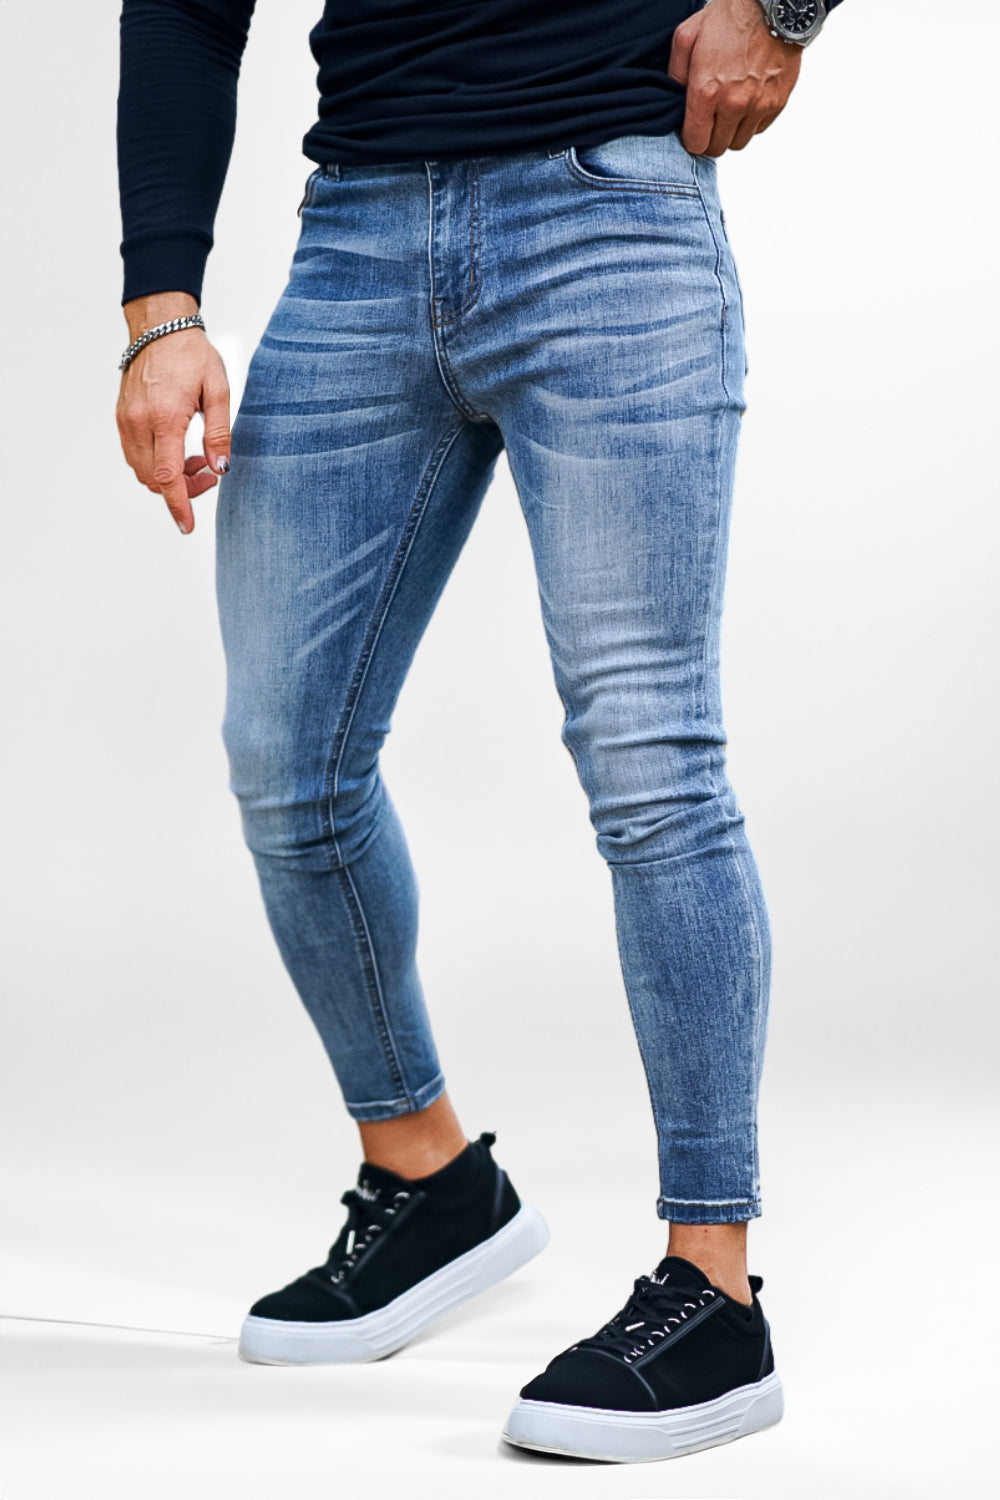 Jeans|Skinny für Herren|50% Jeans|Stretch-Jeans Jeans Rabatt|Skinny GINGTTO – Fit Skinny Slim für Mittelblaue Jeans Herren|Herren Fit